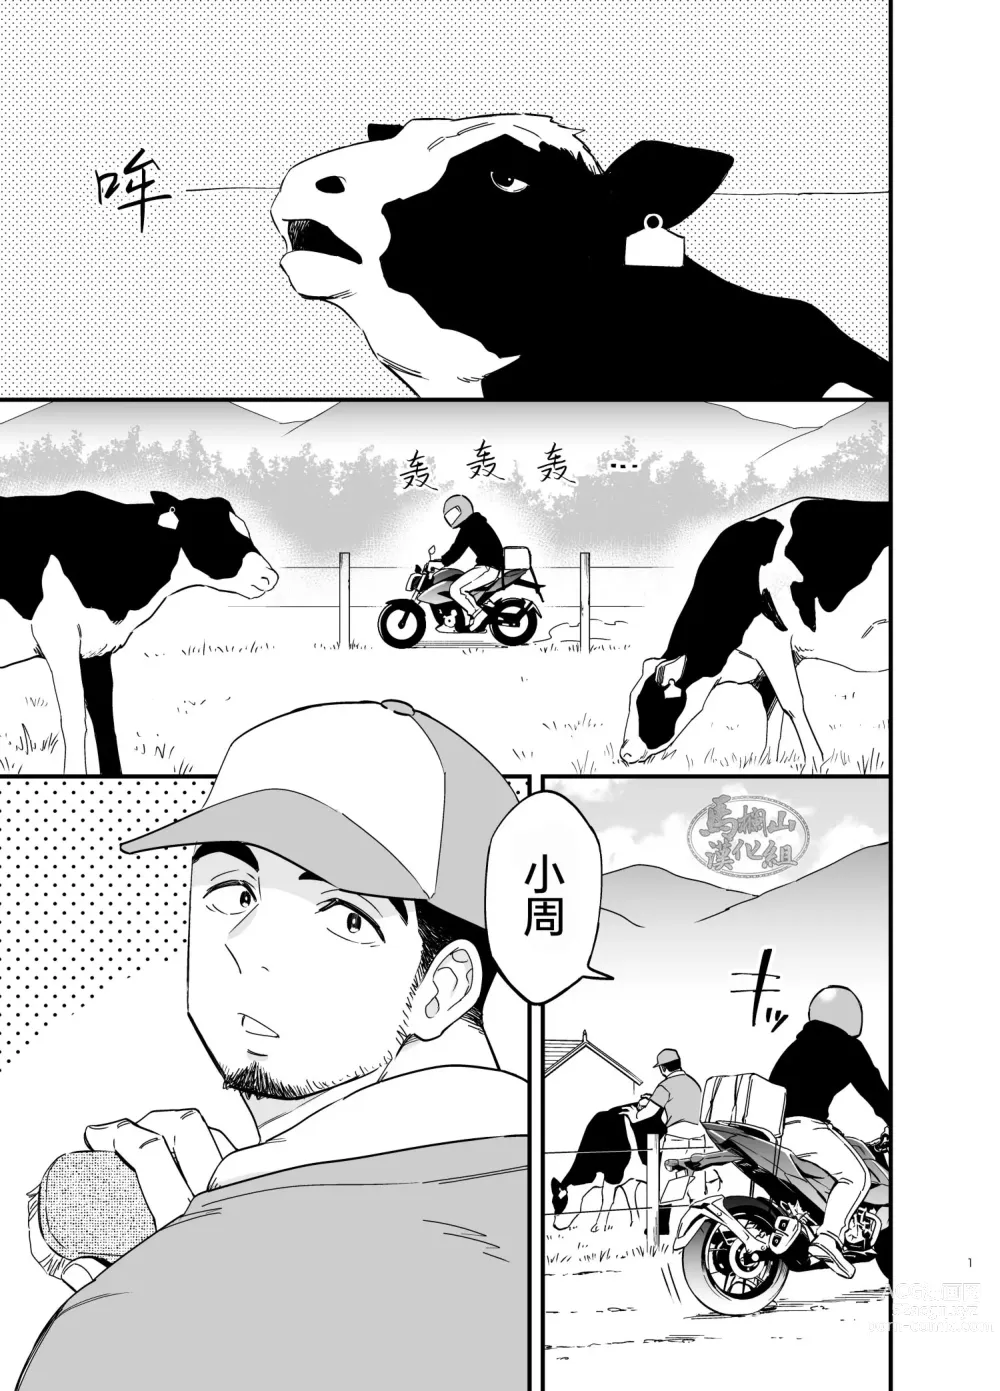 Page 2 of manga 穴